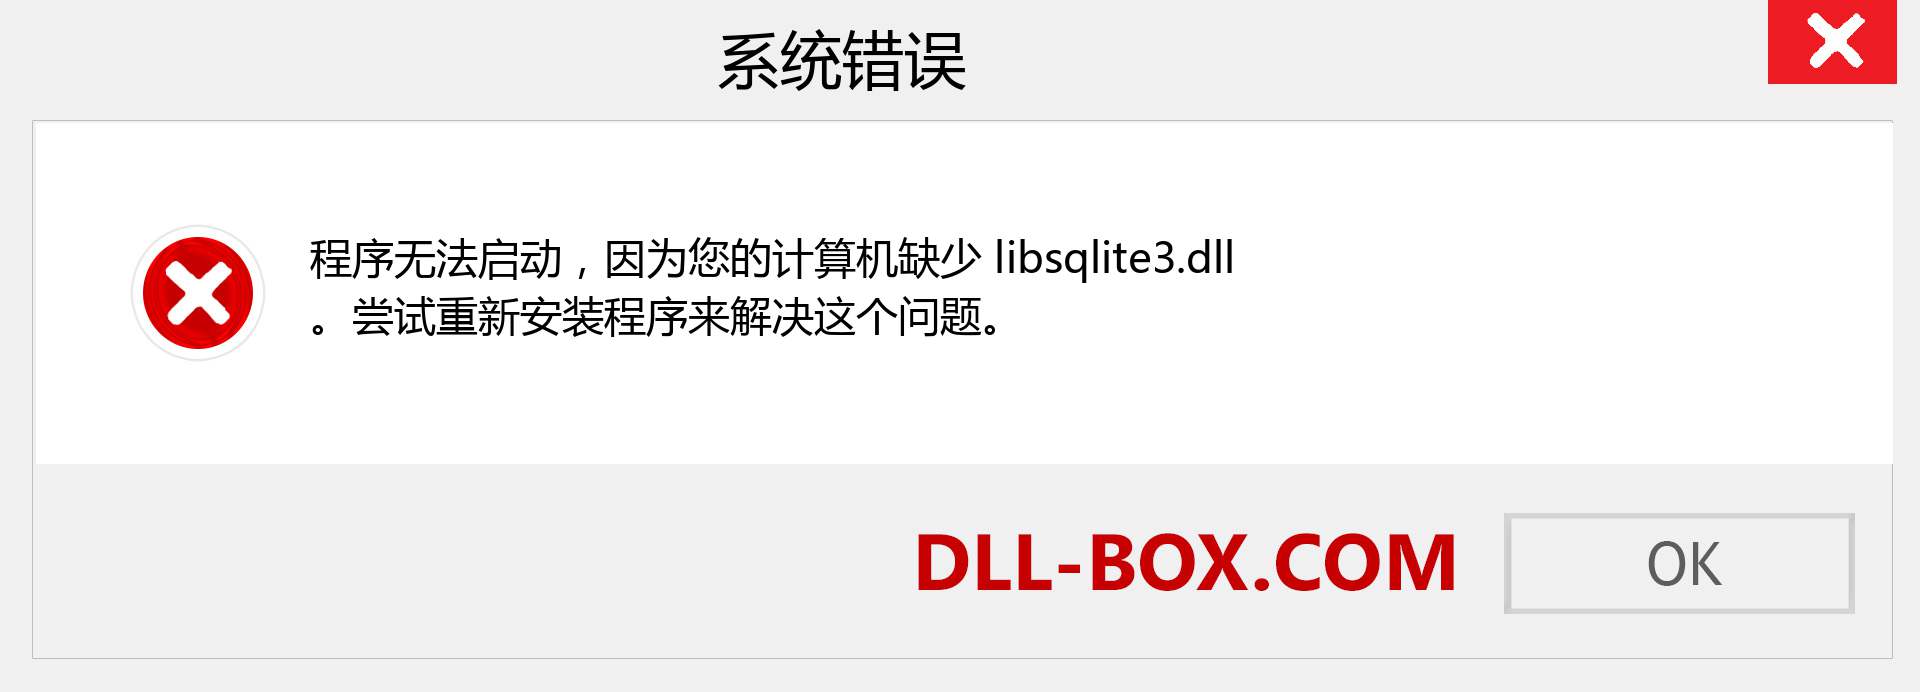 libsqlite3.dll 文件丢失？。 适用于 Windows 7、8、10 的下载 - 修复 Windows、照片、图像上的 libsqlite3 dll 丢失错误